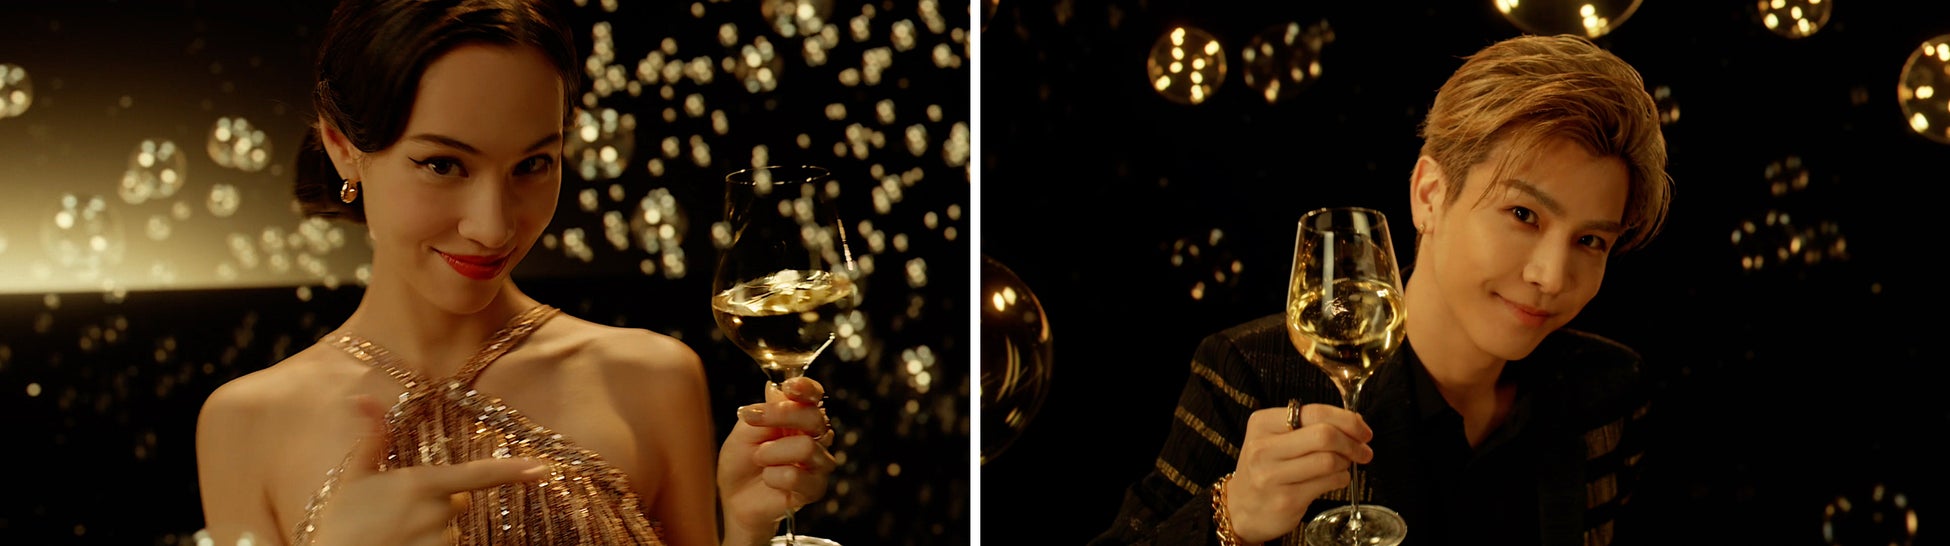 モエ・エ・シャンドン フレンズ オブ ザ ハウスの水原希子さん、岩田剛典さんによるホリデースペシャルムービー「モエ・エ・シャンドン “エフェルヴェソンス” シャンパンの魔法と輝きを」が完成のサブ画像1